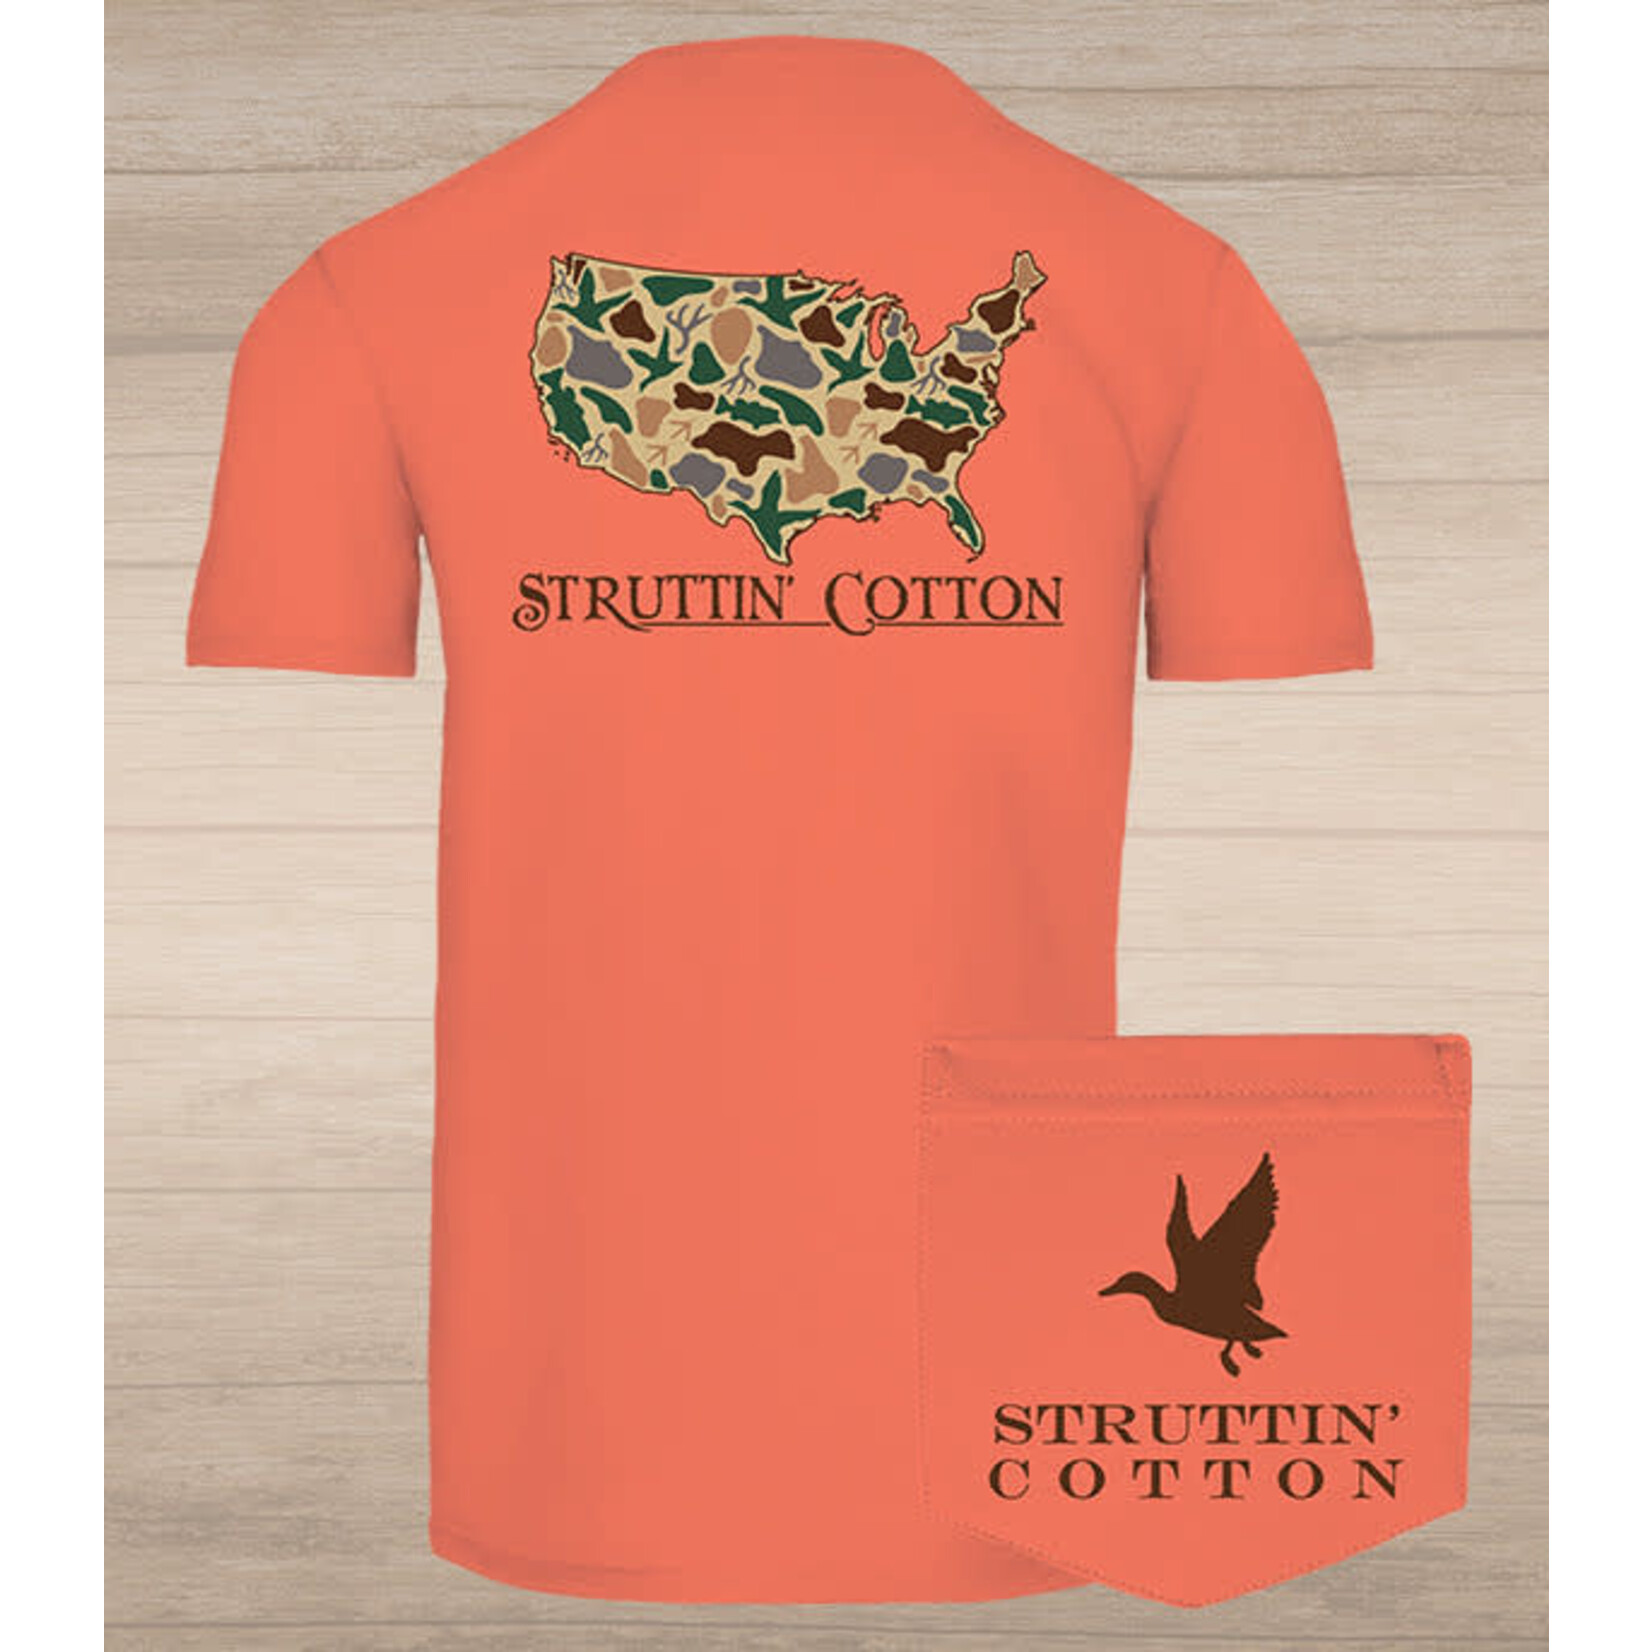 Struttin' Cotton Struttin' Cotton United States Standout Camo S/S TEE Shirt